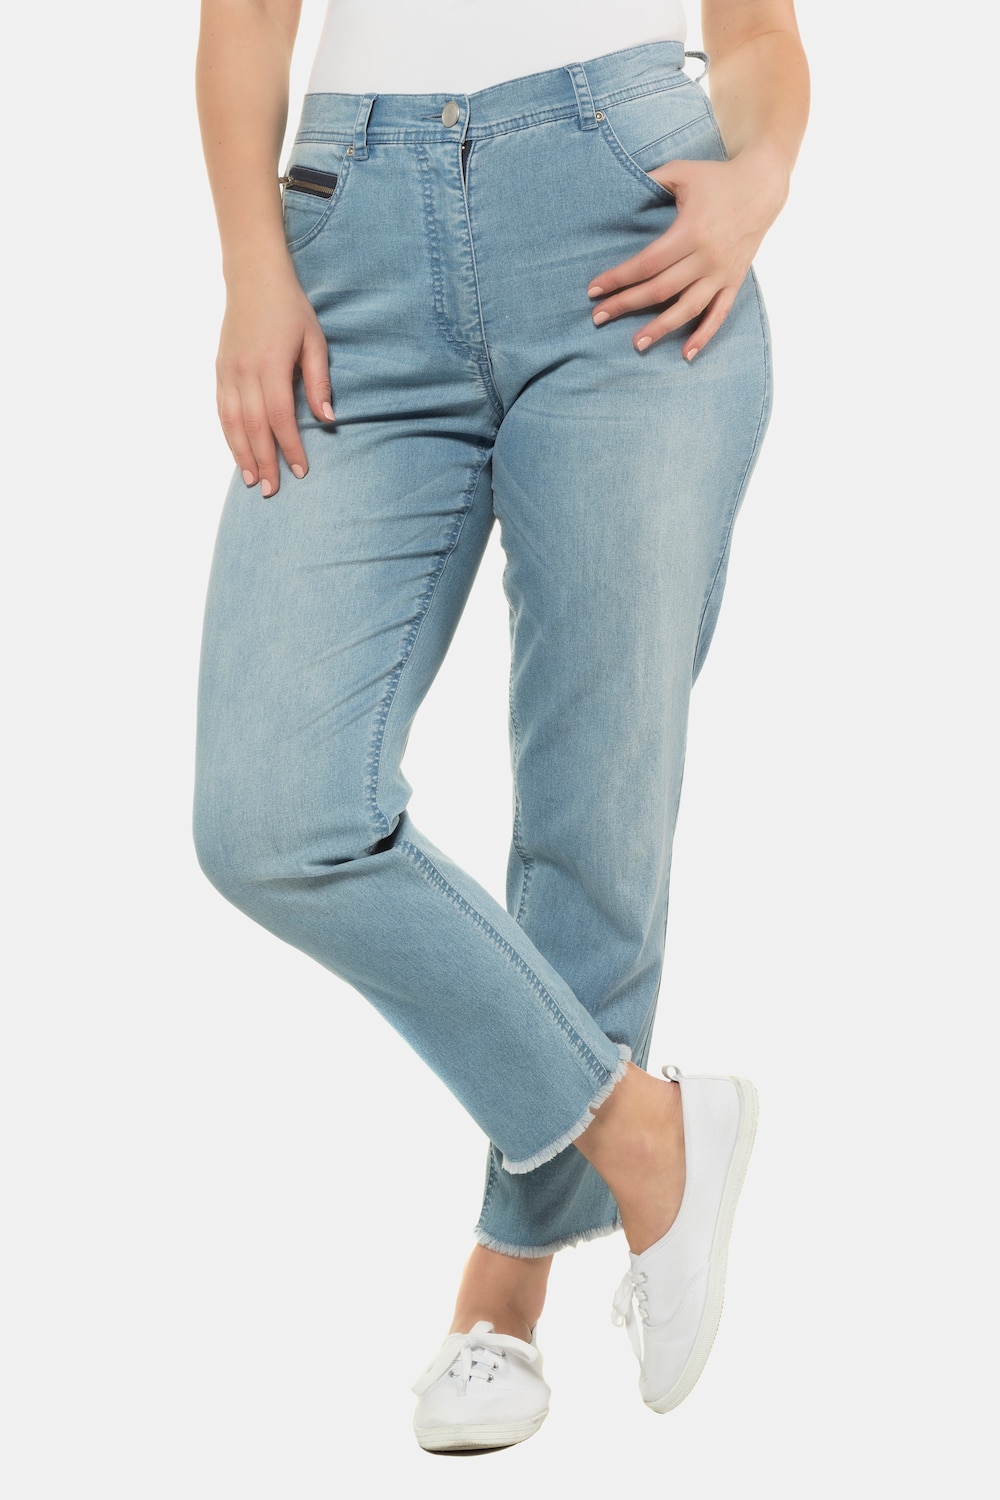 Grote Maten jeans, Dames, blauw, Maat: 54, Katoen/Polyester, Ulla Popken